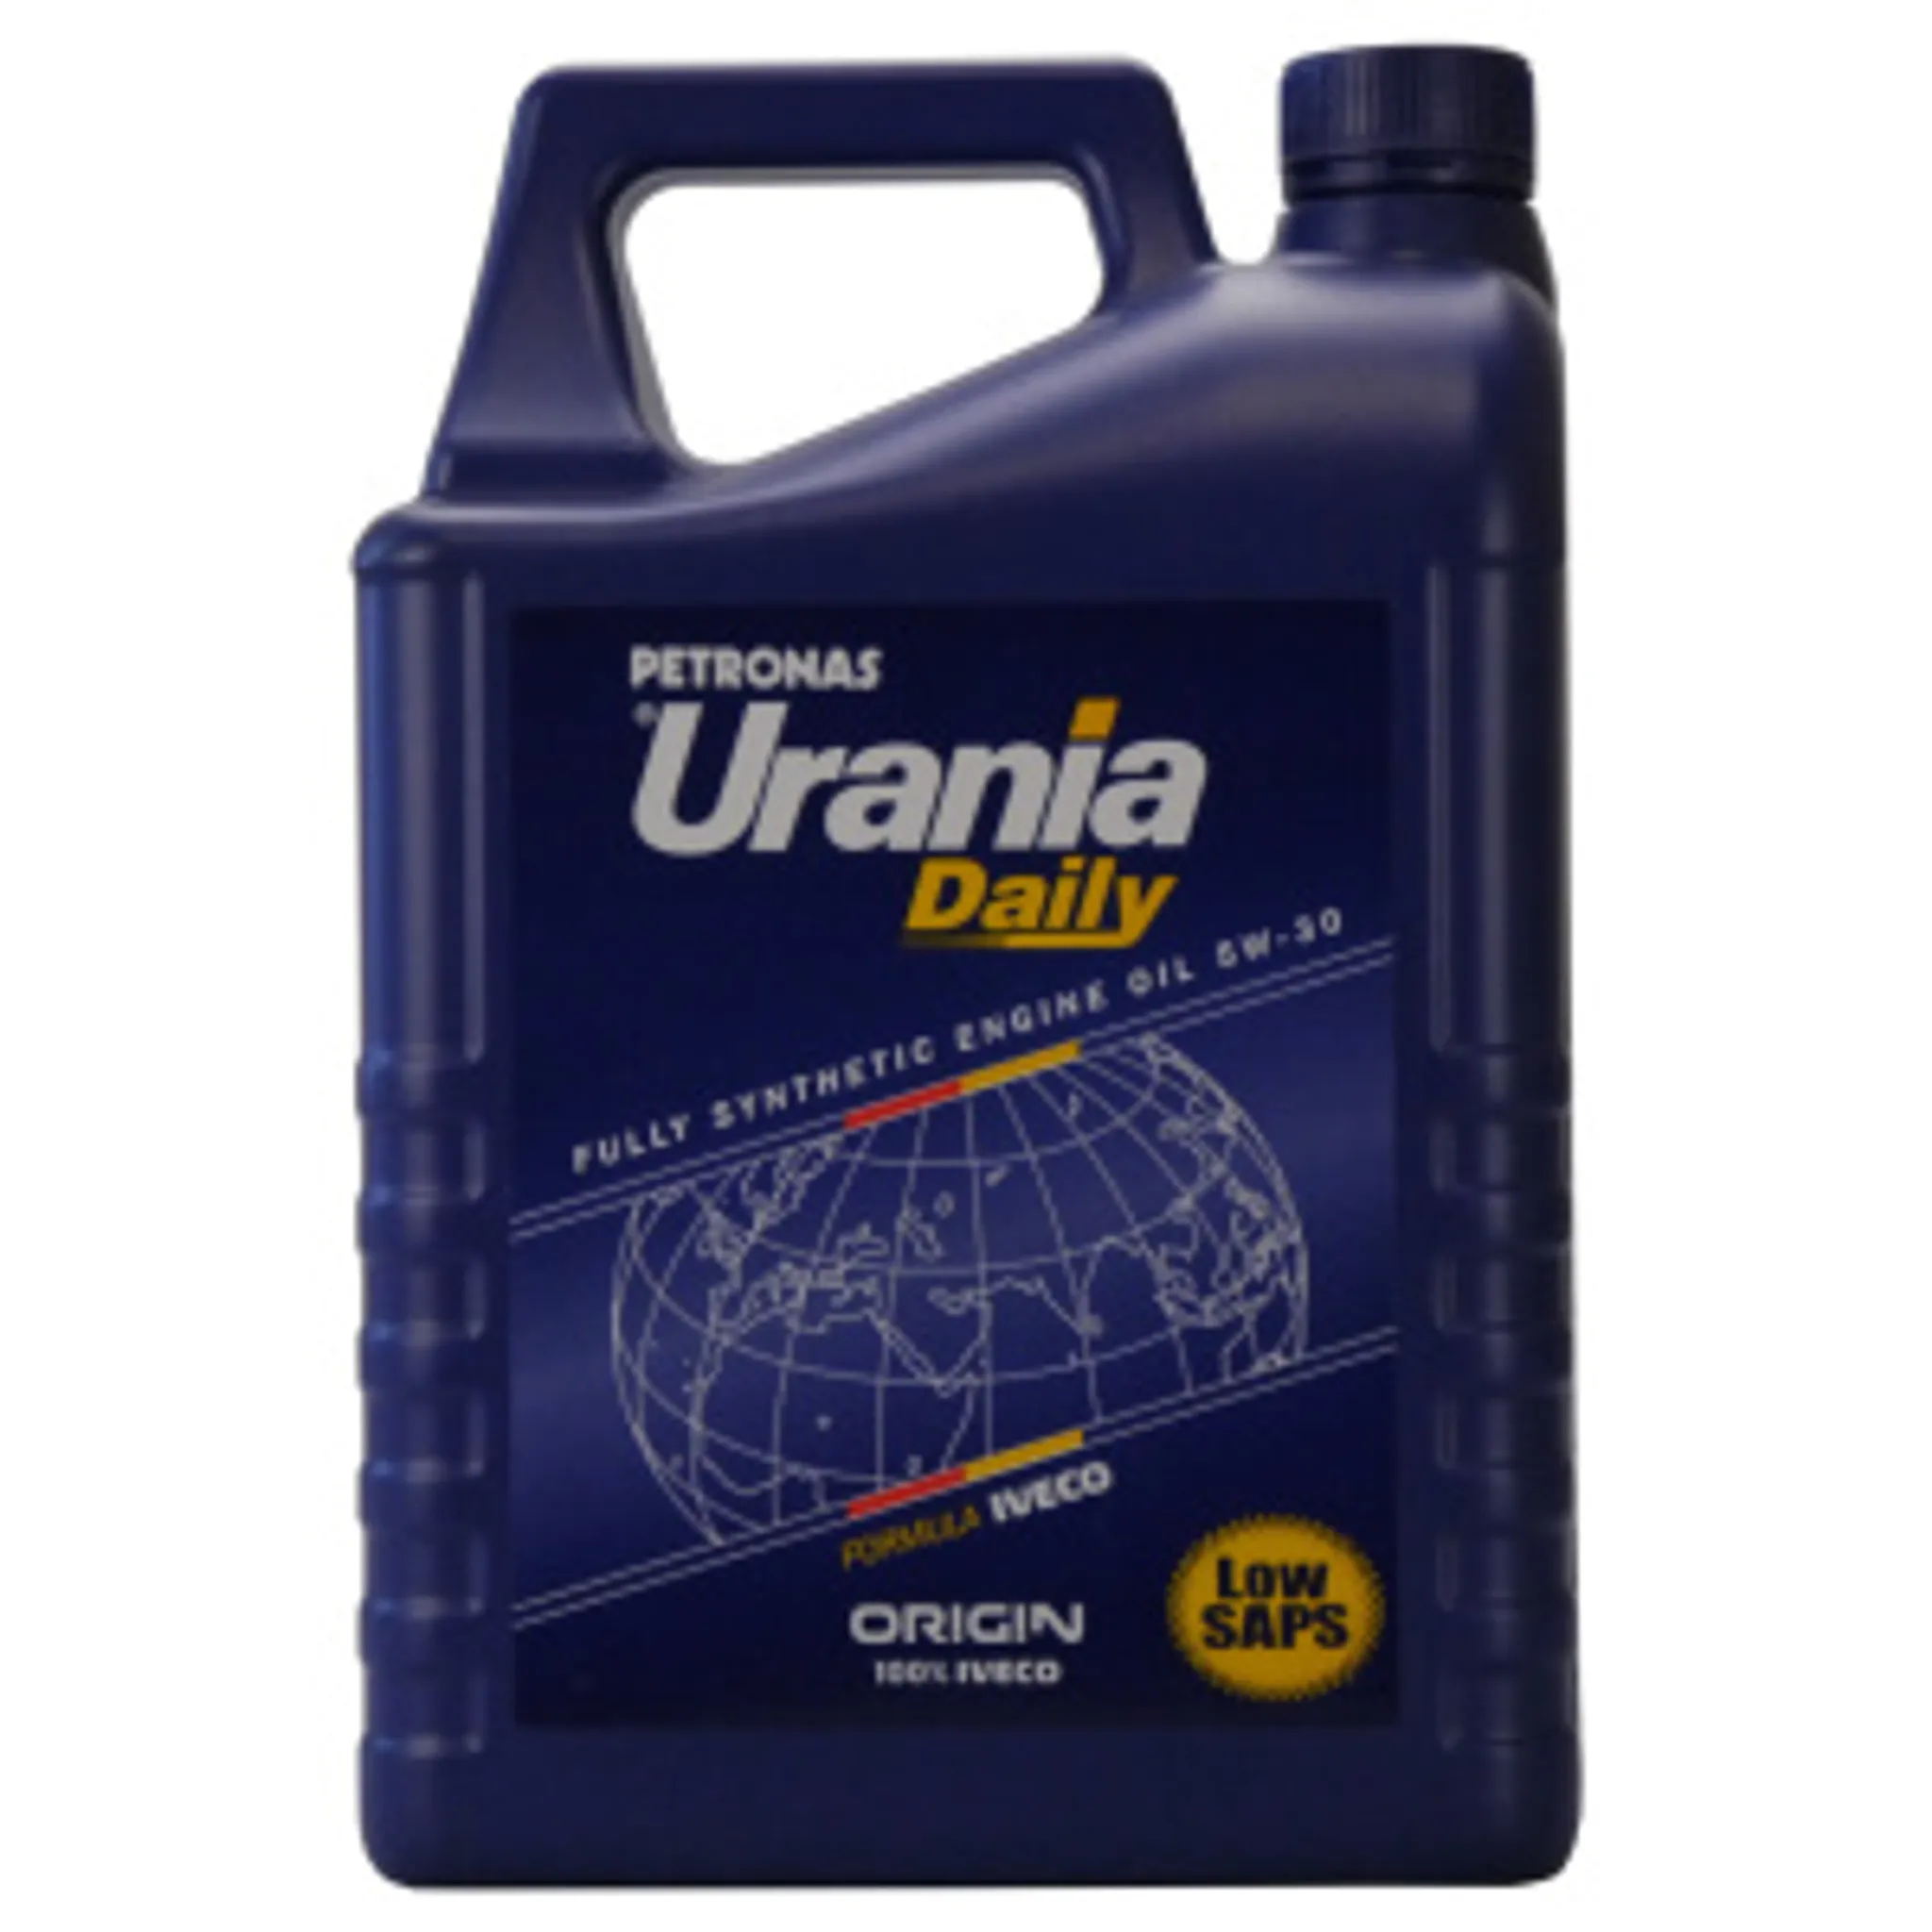 Urania Daily LS 5W-30 Leichtlauf-Motoröl 5 Liter Kanister Reifen